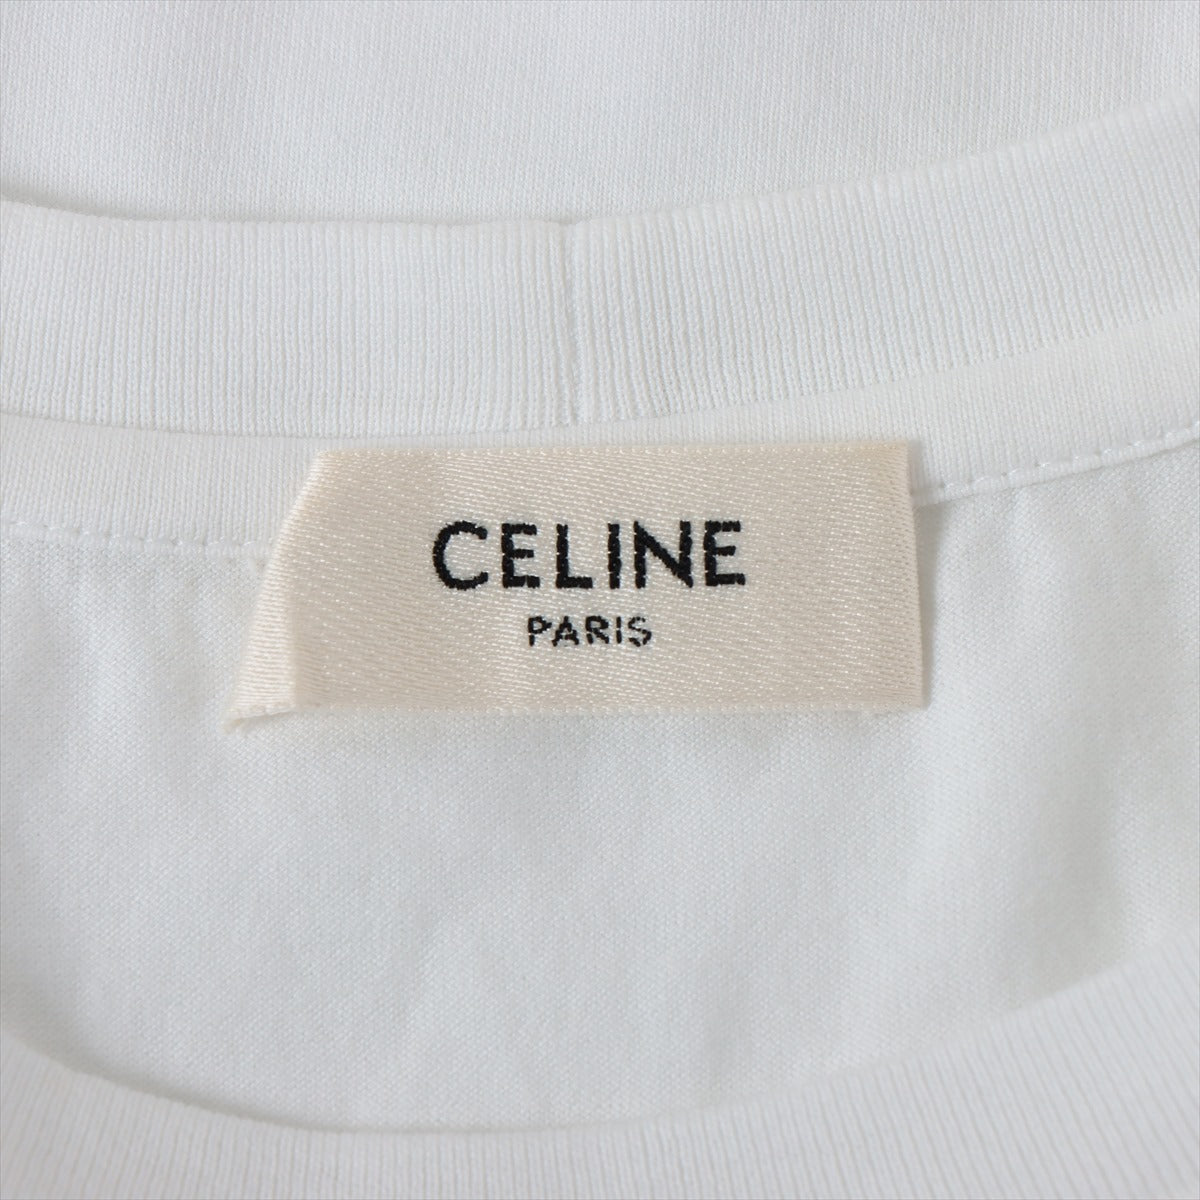 セリーヌ コットン Tシャツ XS レディース ホワイト 2X351501F